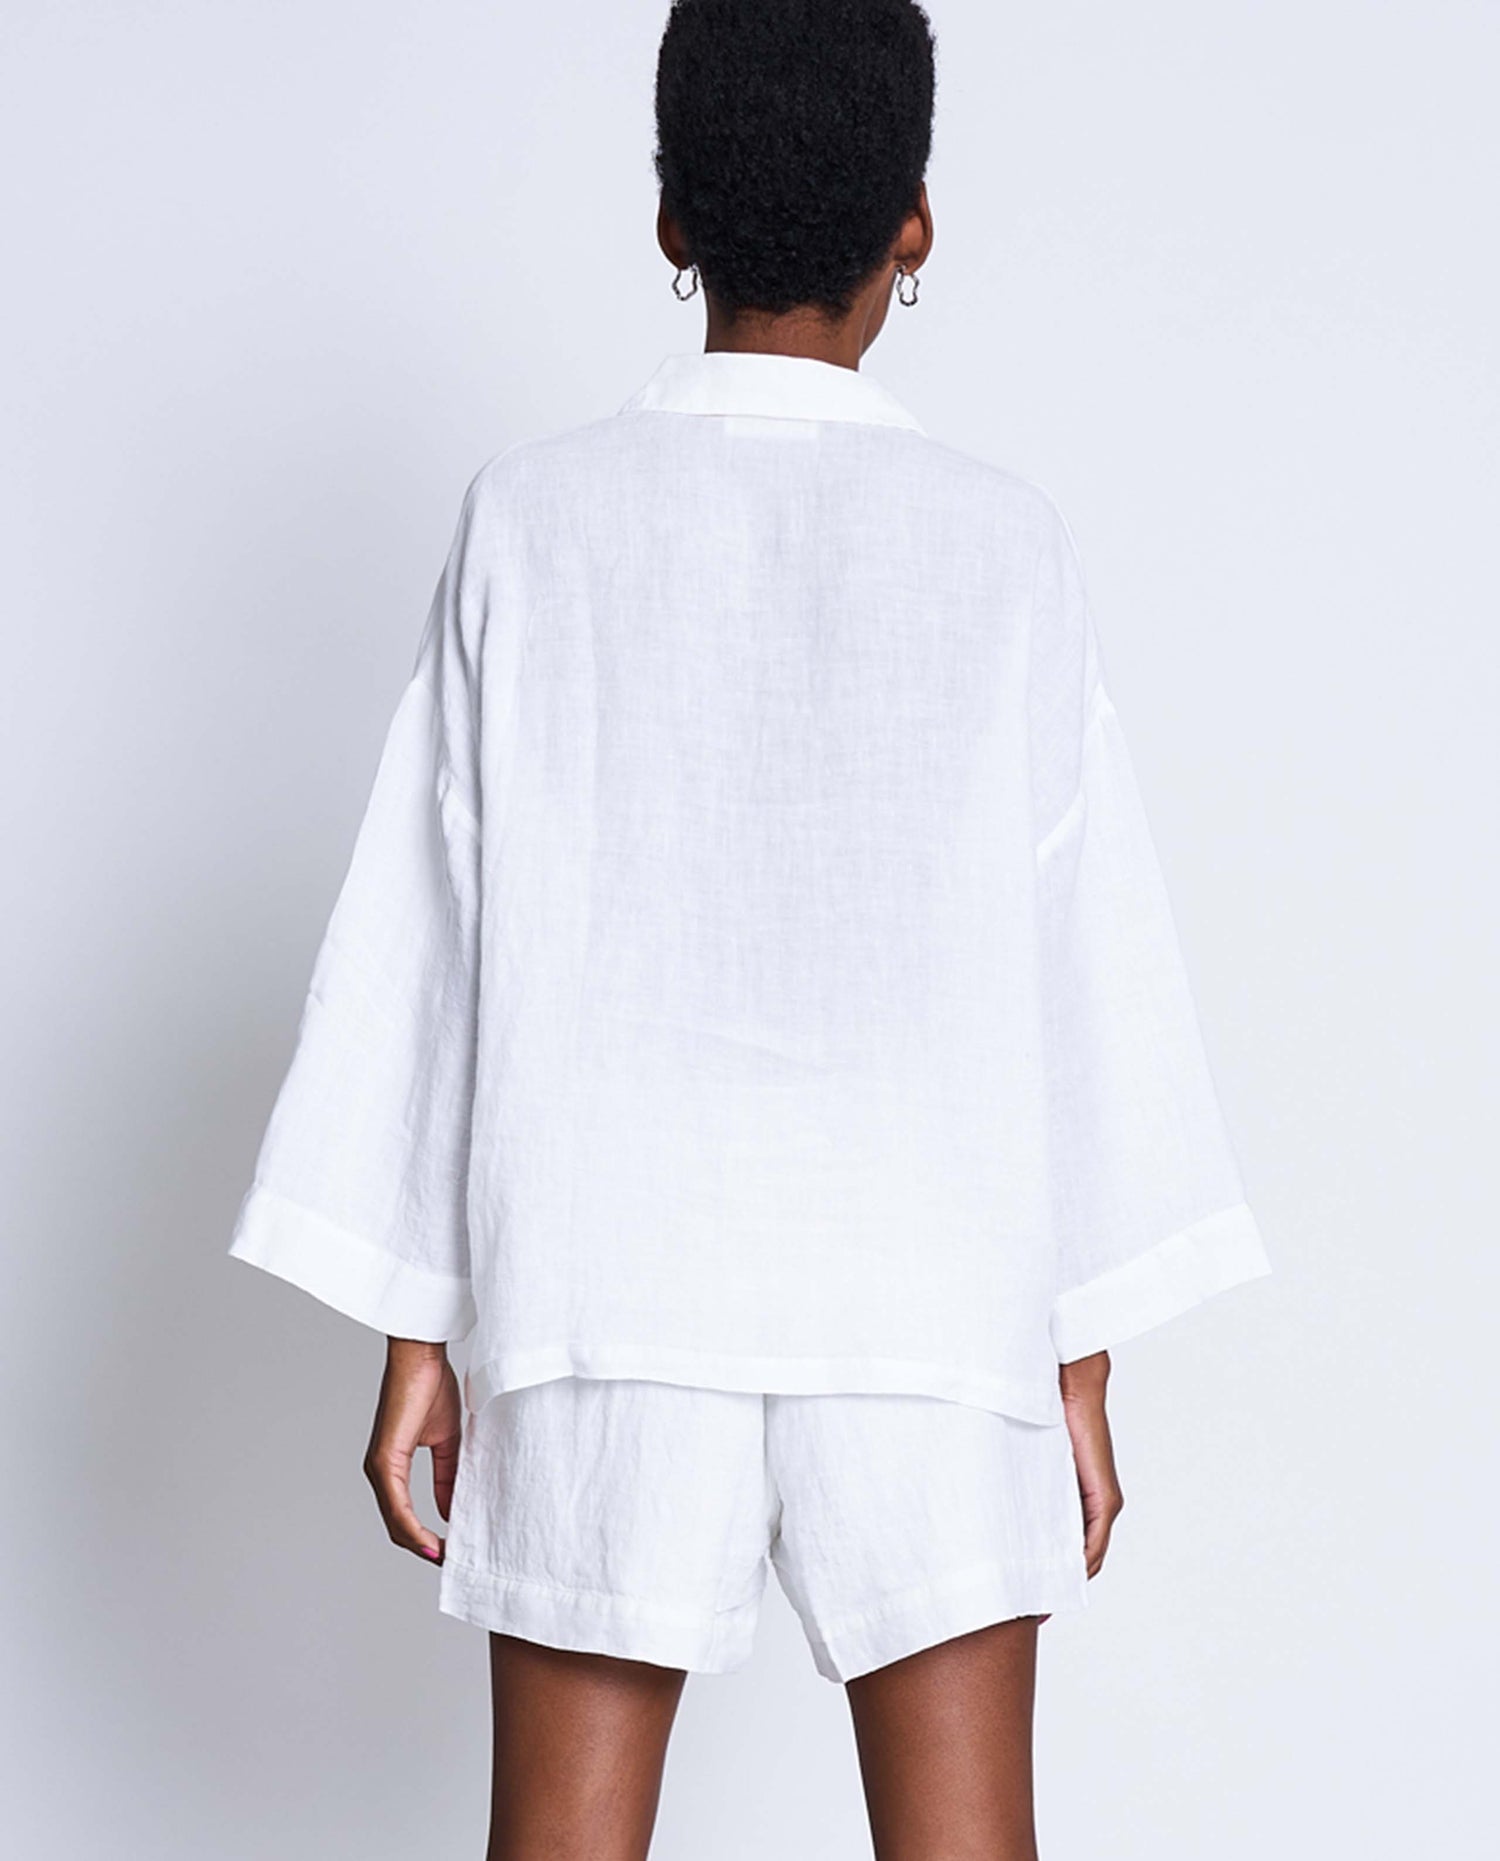 marché commun jan n june femme chemise ample Mons lin belge blanche